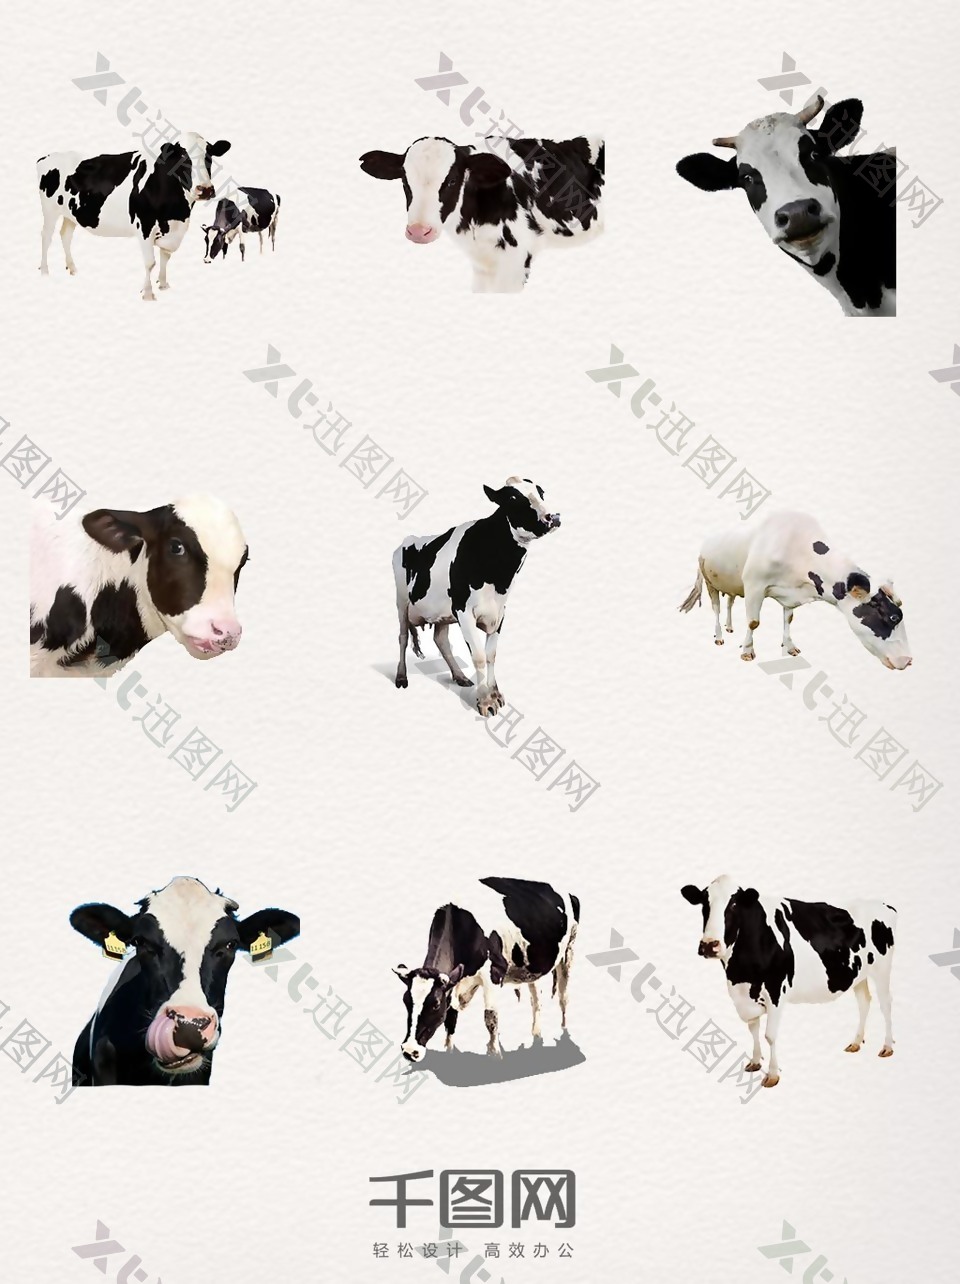 奶牛装饰图案设计元素